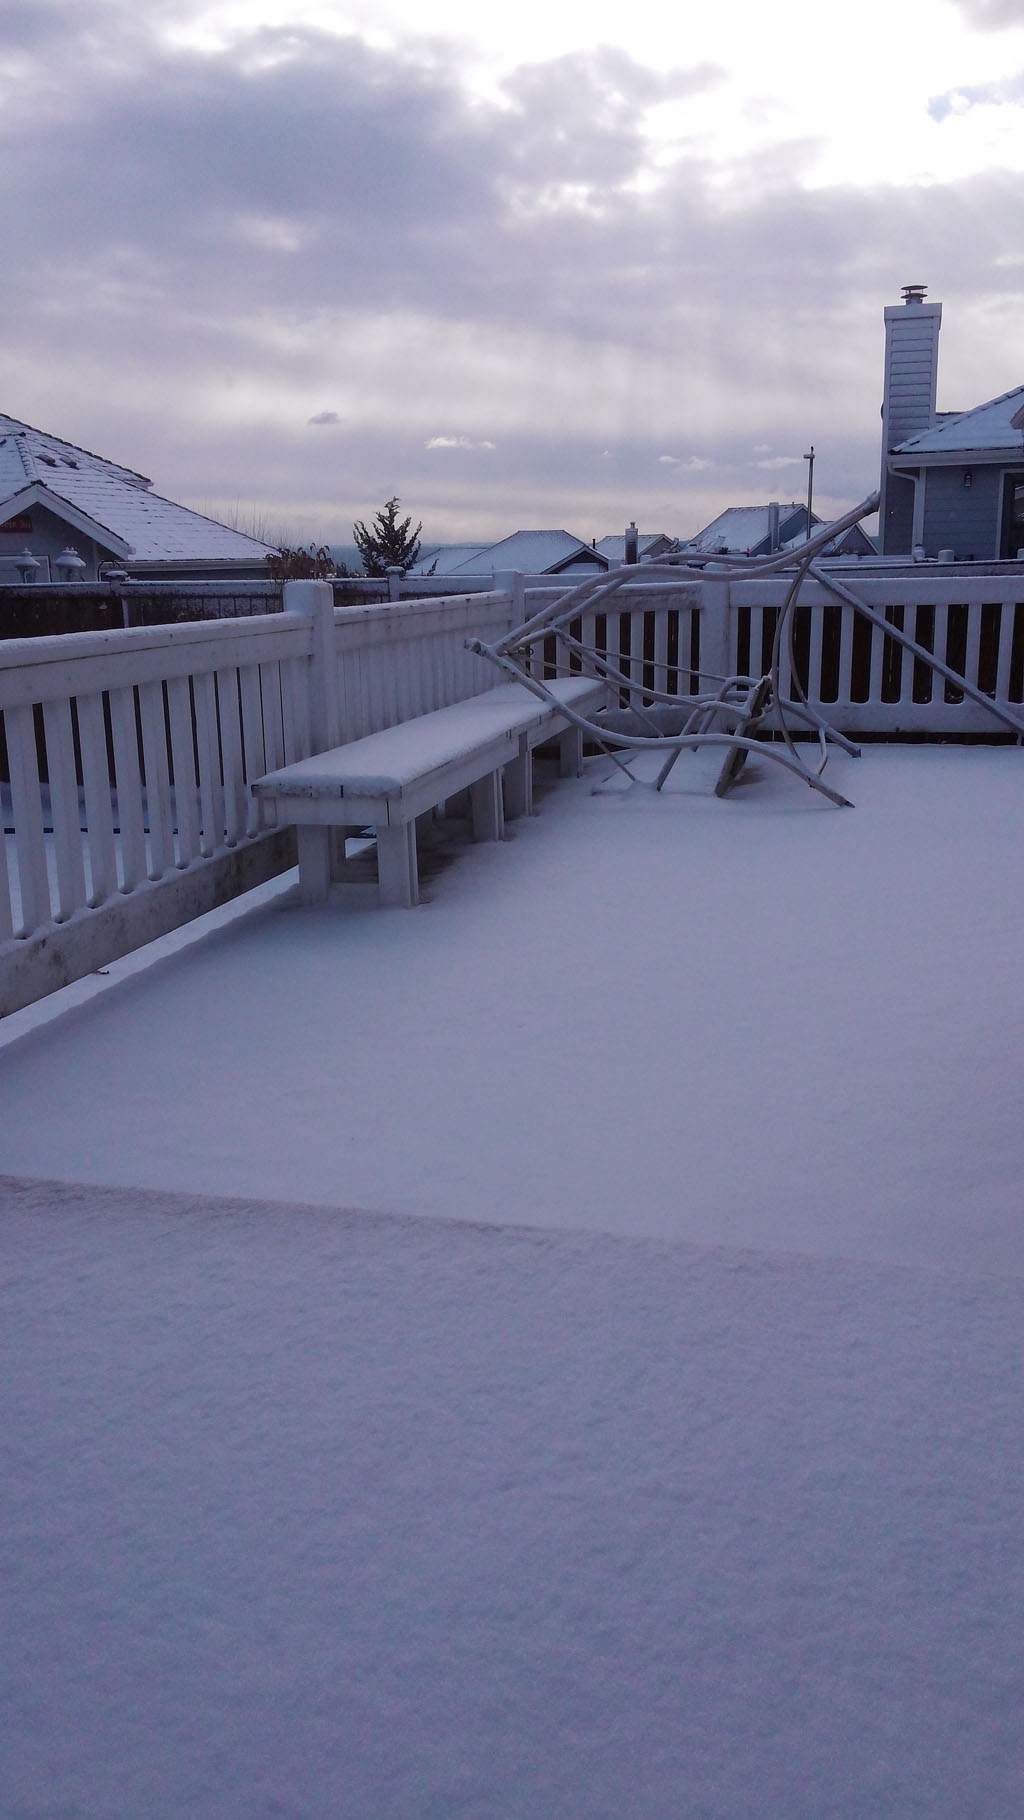 20141129_112057.jpg : 눈이 많이 왔습니다.